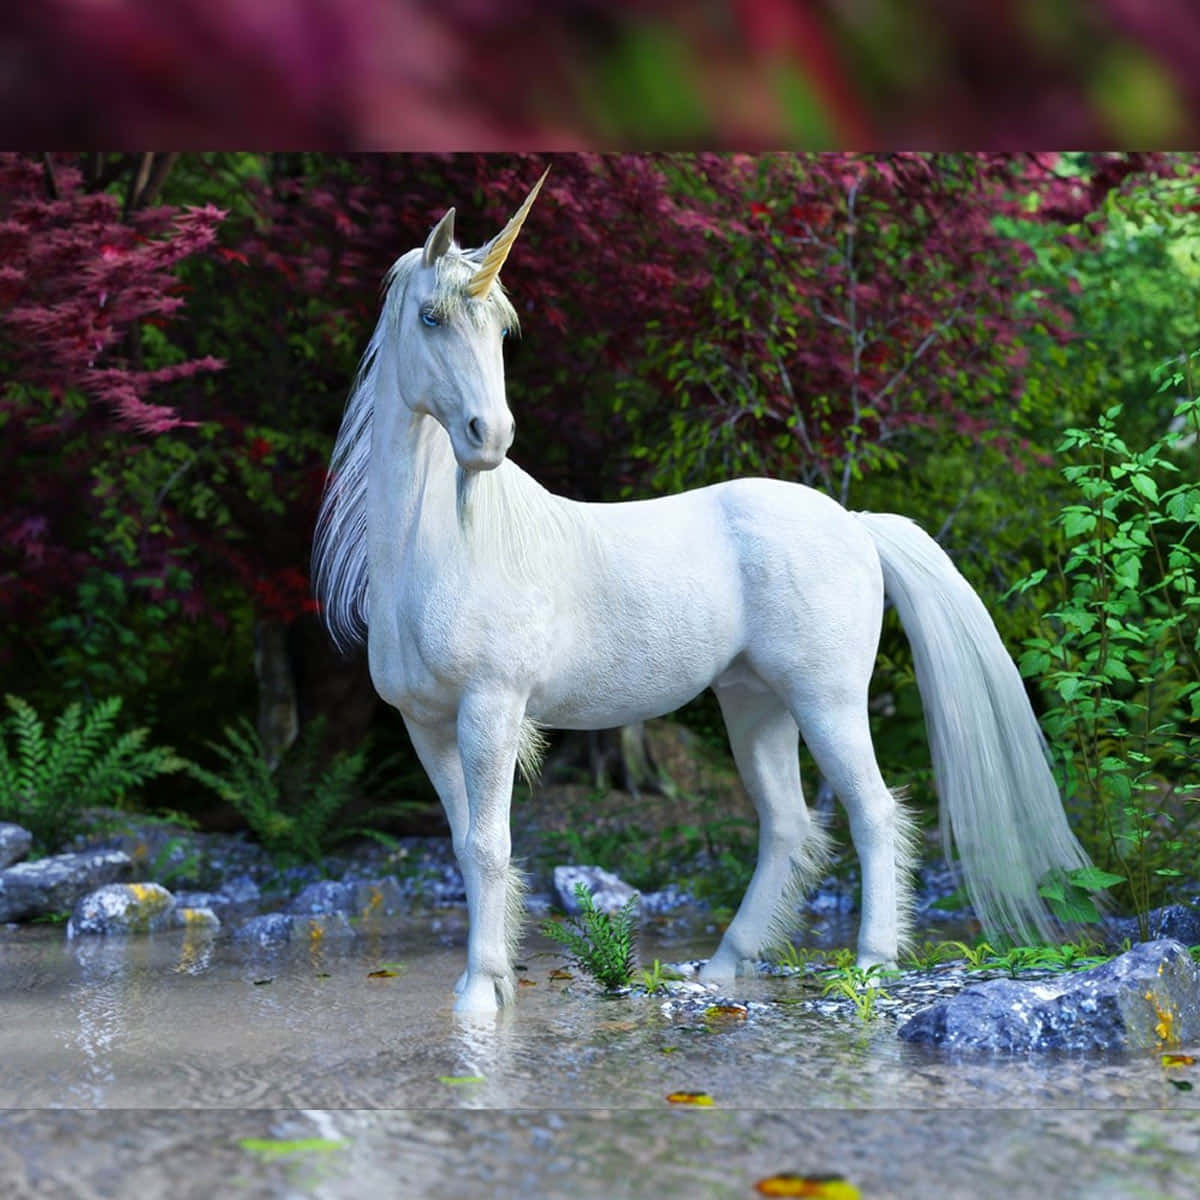 Imagende Un Unicornio Parado En Un Jardín